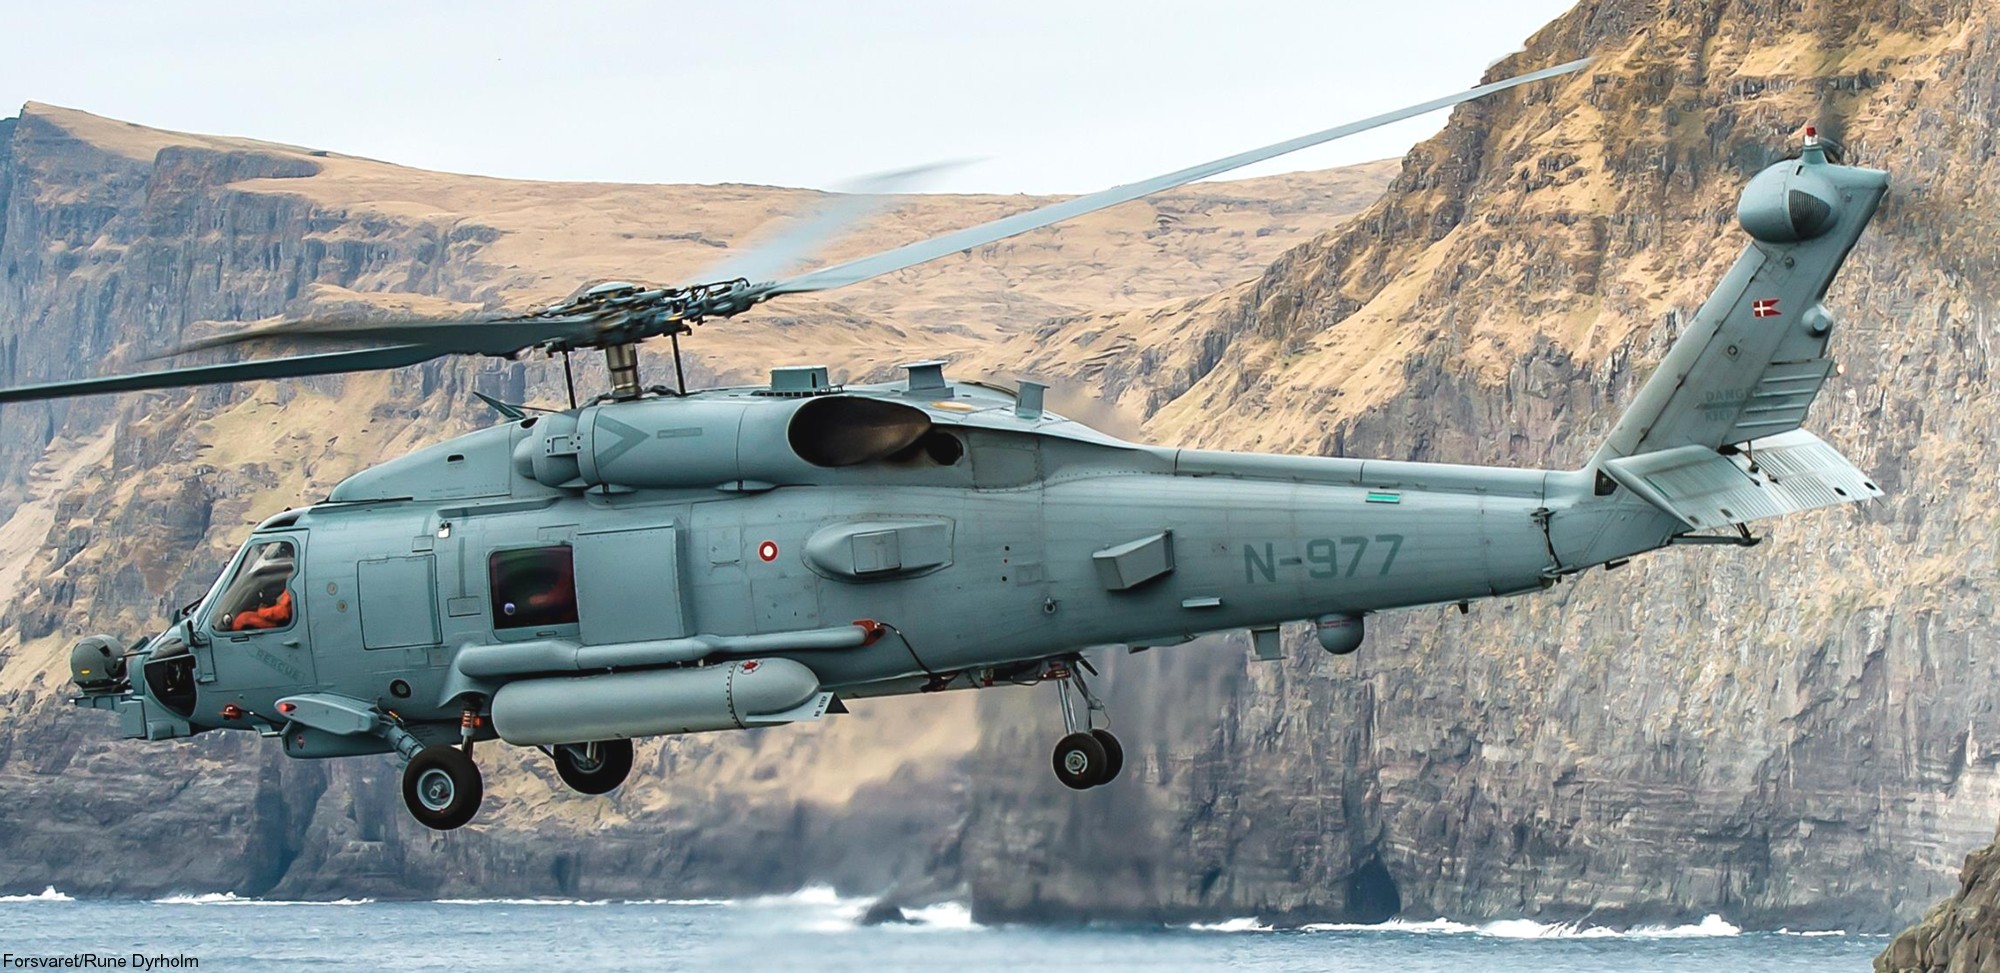 mh-60r seahawk royal danish navy air force flyvevåbnet kongelige danske marine sikorsky helicopter 723 eskadrille squadron karup 19